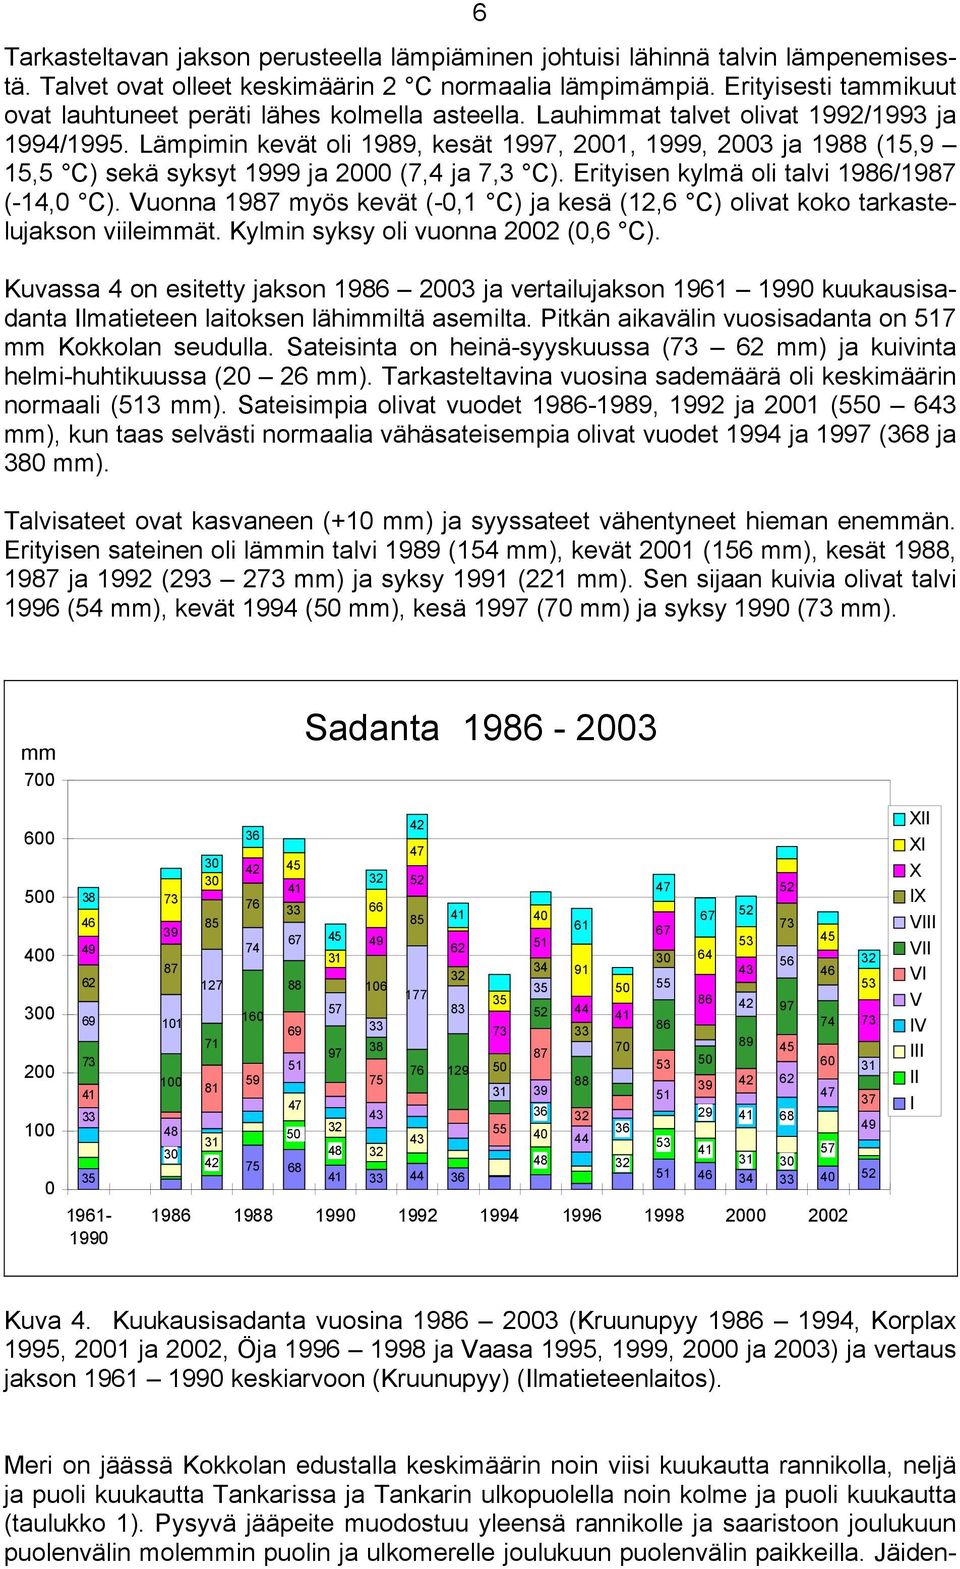 Lämpimin kevät oli 1989, kesät 1997, 21, 1999, 23 ja 1988 (15,9 15,5 C) sekä syksyt 1999 ja 2 (7,4 ja 7,3 C). Erityisen kylmä oli talvi 1986/1987 (-14, C).